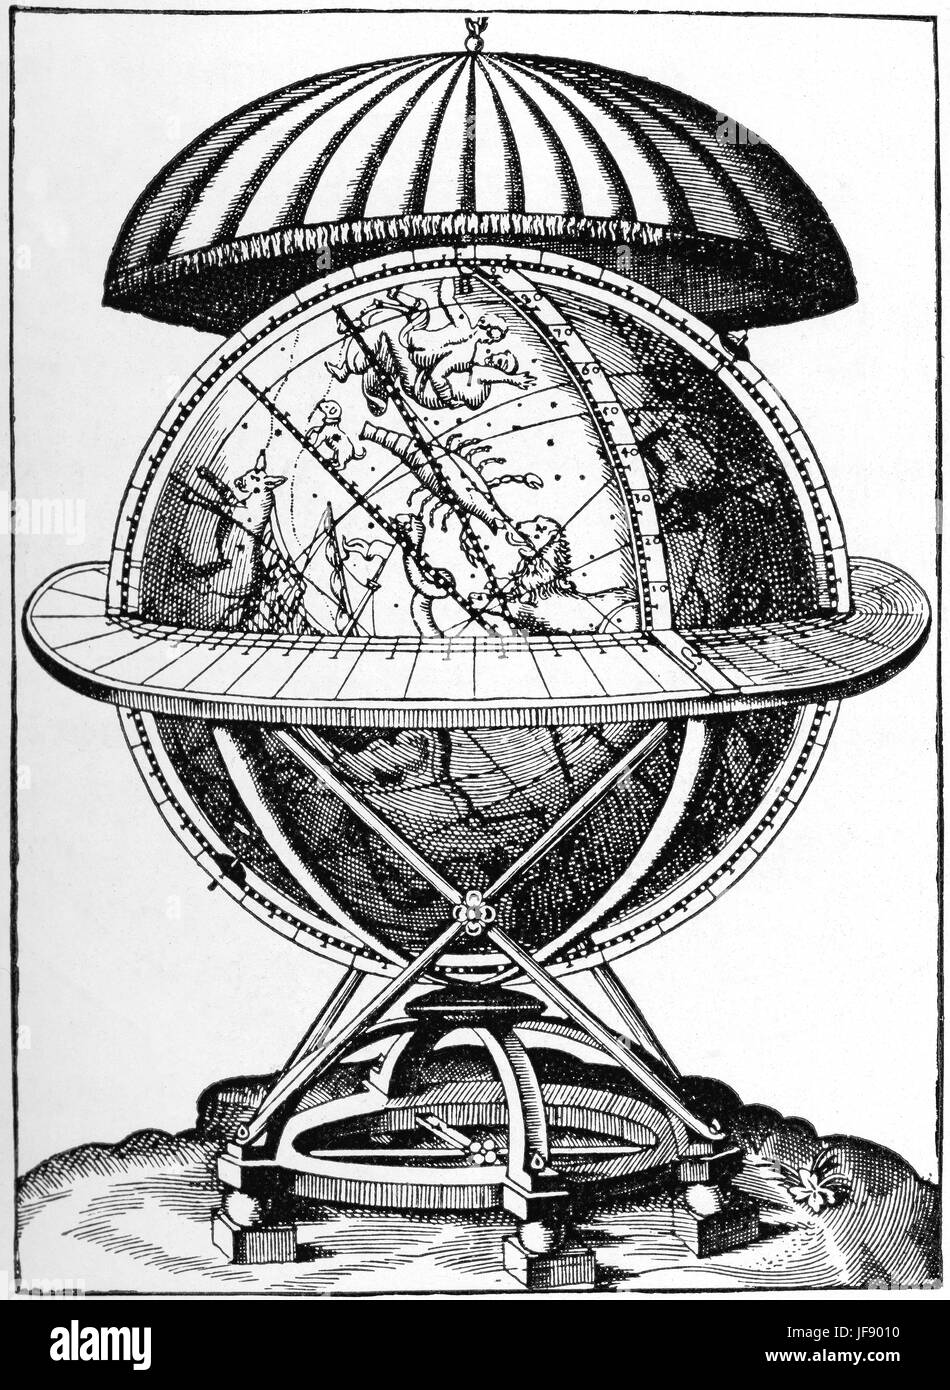 Thycho Brahe Himmelsglobus in 1580s gemacht.  Ca. 1,6 Meter im Umkreis, dauerte mehr als 10 Jahren um zu machen.    Die meiste Arbeit beteiligt, machen den hohlen hölzernen Globus als kugelrunden wie möglich, nach dem es in Messing Platten bedeckt war. Der Globus hatte zwei primäre wissenschaftliche Anwendungen: die Position der Sterne beobachtet von Tycho aufzeichnen. 1595 hatte er 1000 genau beobachteten Sterne auf der ganzen Welt eingeschrieben. Jedoch sollte es ursprünglich als eine Rechenmaschine. Durch zusätzliche Kreise, die lokalen Azimut / Höhe Koordinaten, gemessen mit Brahes Instrumente in umgewandelt wurden die Stockfoto